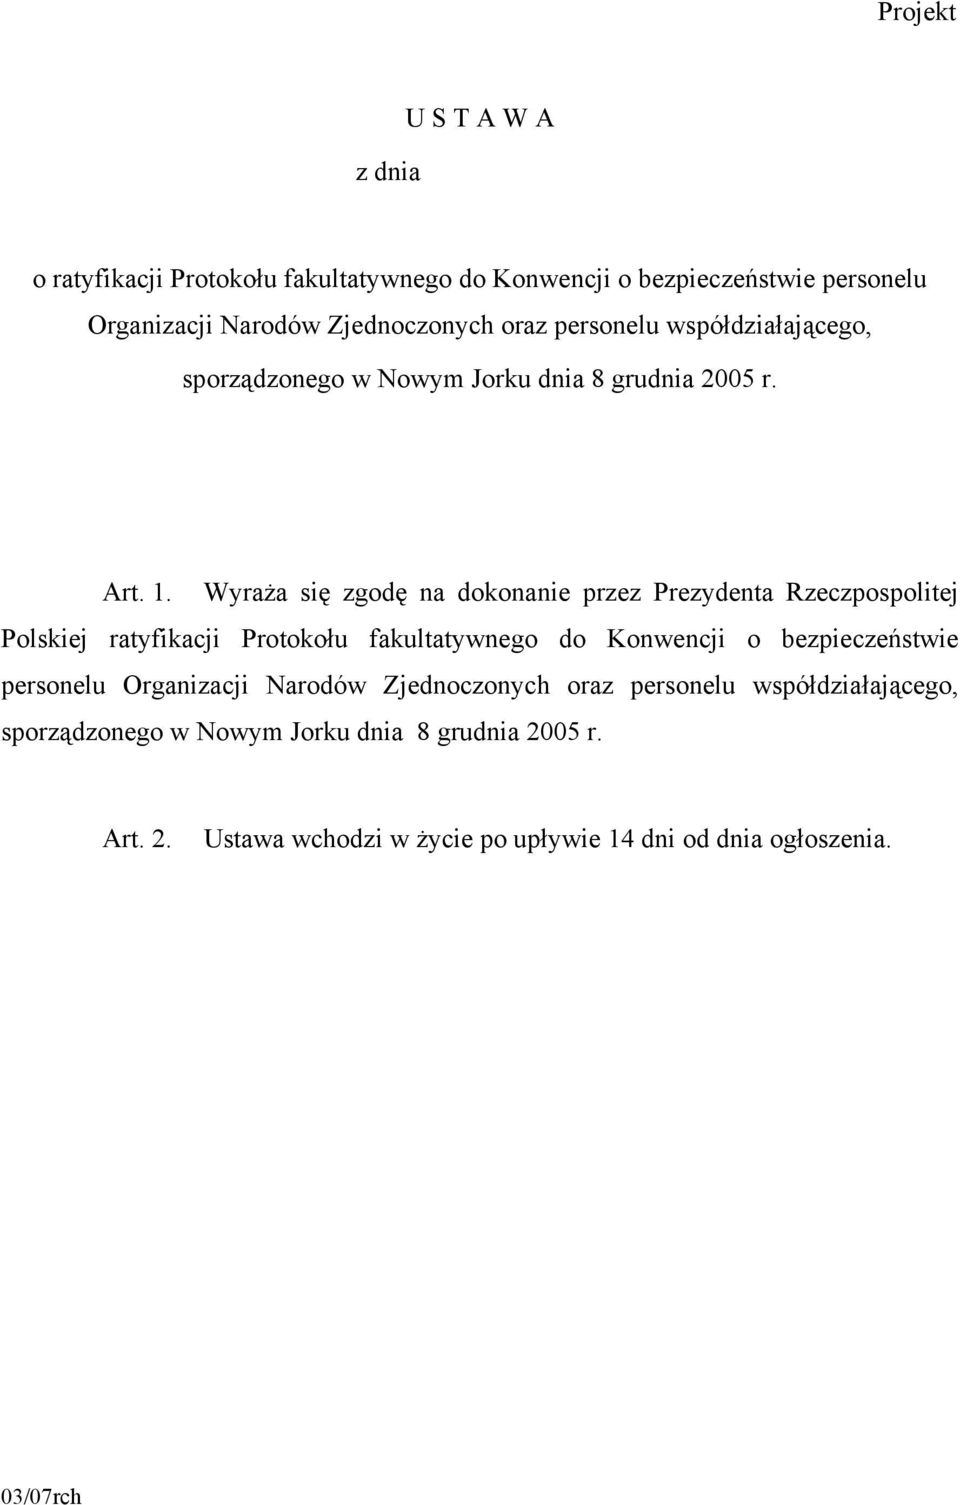 Wyraża się zgodę na dokonanie przez Prezydenta Rzeczpospolitej Polskiej ratyfikacji Protokołu fakultatywnego do Konwencji o bezpieczeństwie